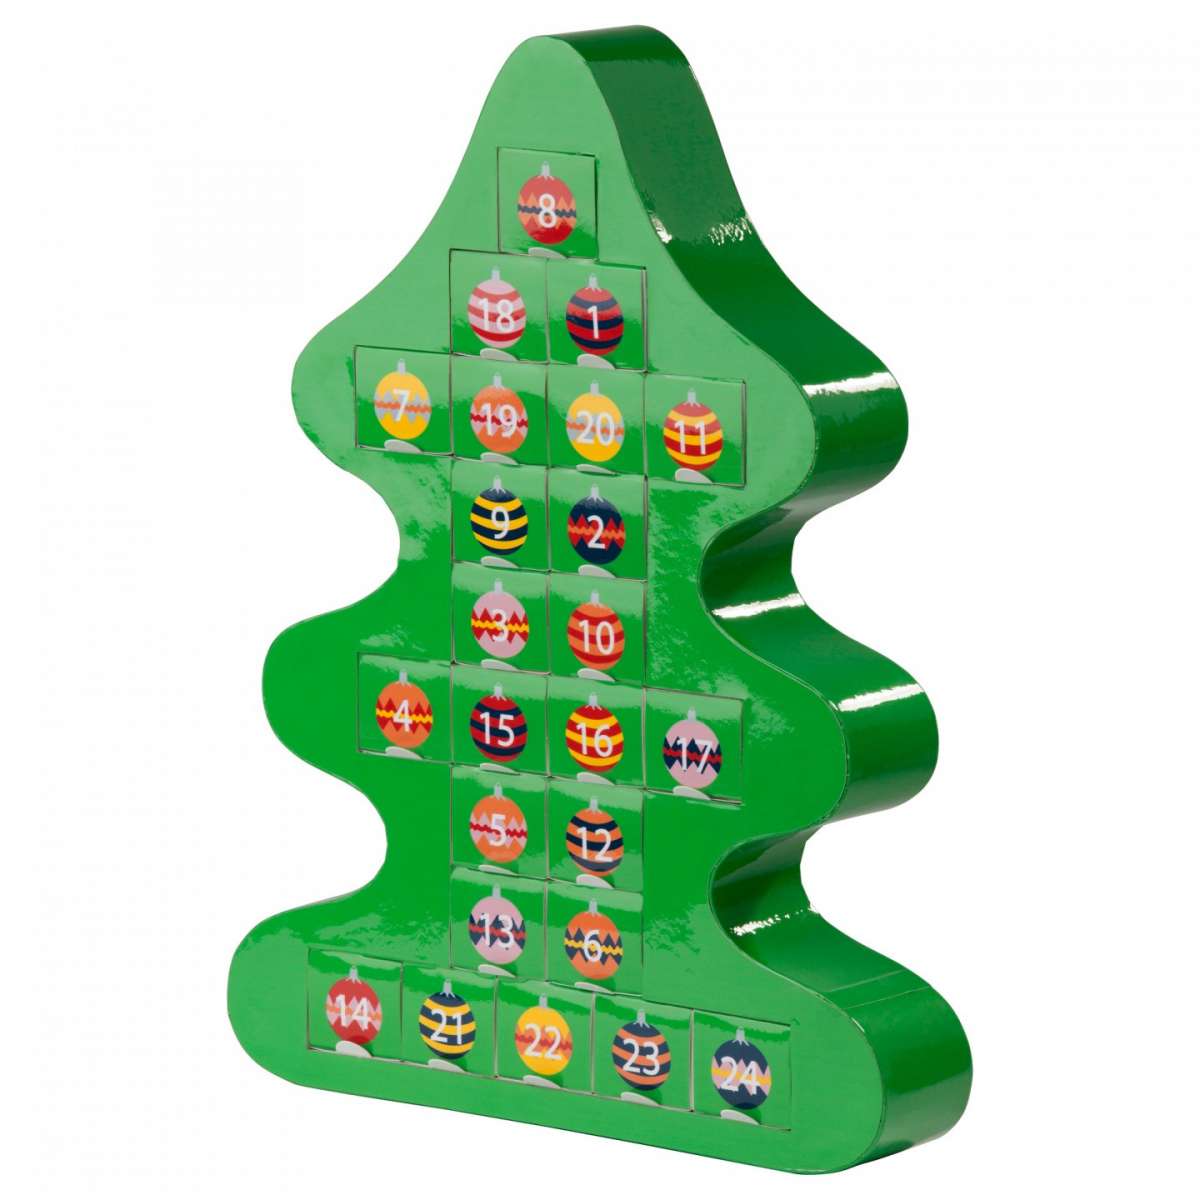 Calendario dell'avvento Ikea a forma di albero Un'idea graziosa per segnare quanto manca al Natale.